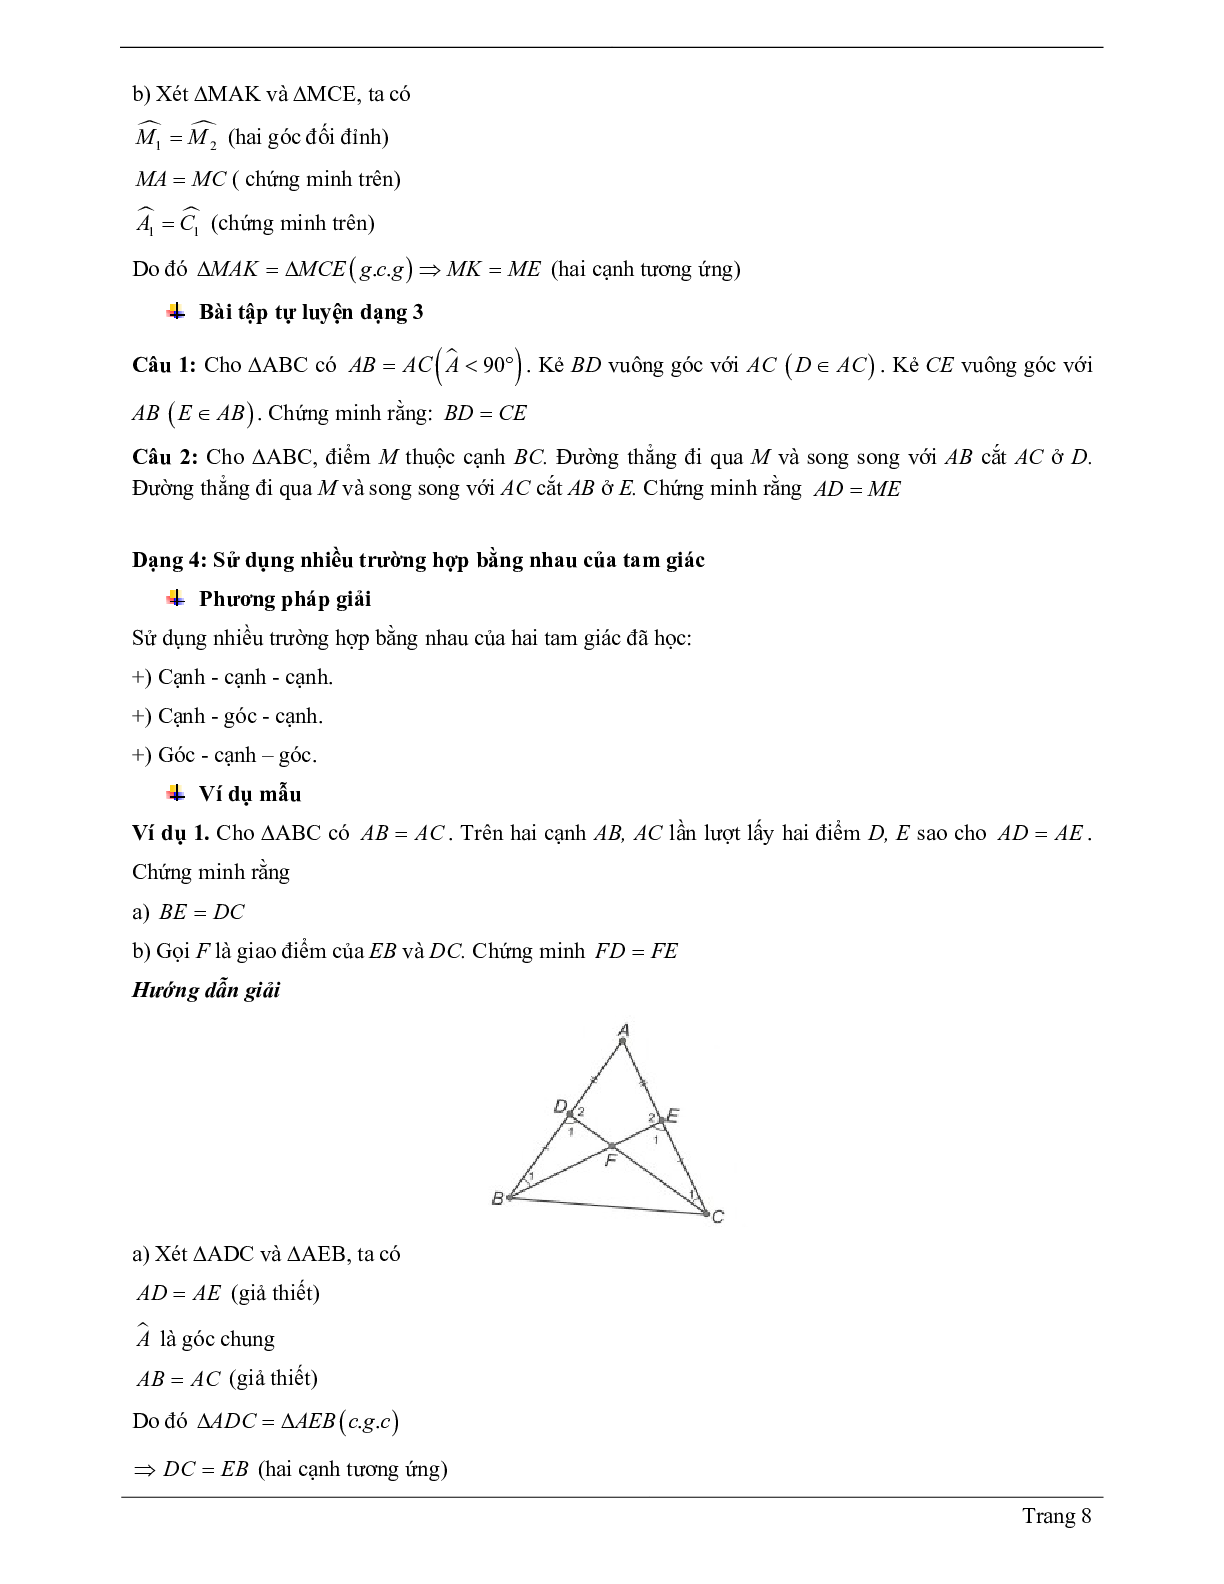 Lý thuyết Toán 7 có đáp án: Trường hợp bằng nhau thứ ba của tam giác: góc - cạnh - góc (g.c.g) (trang 8)